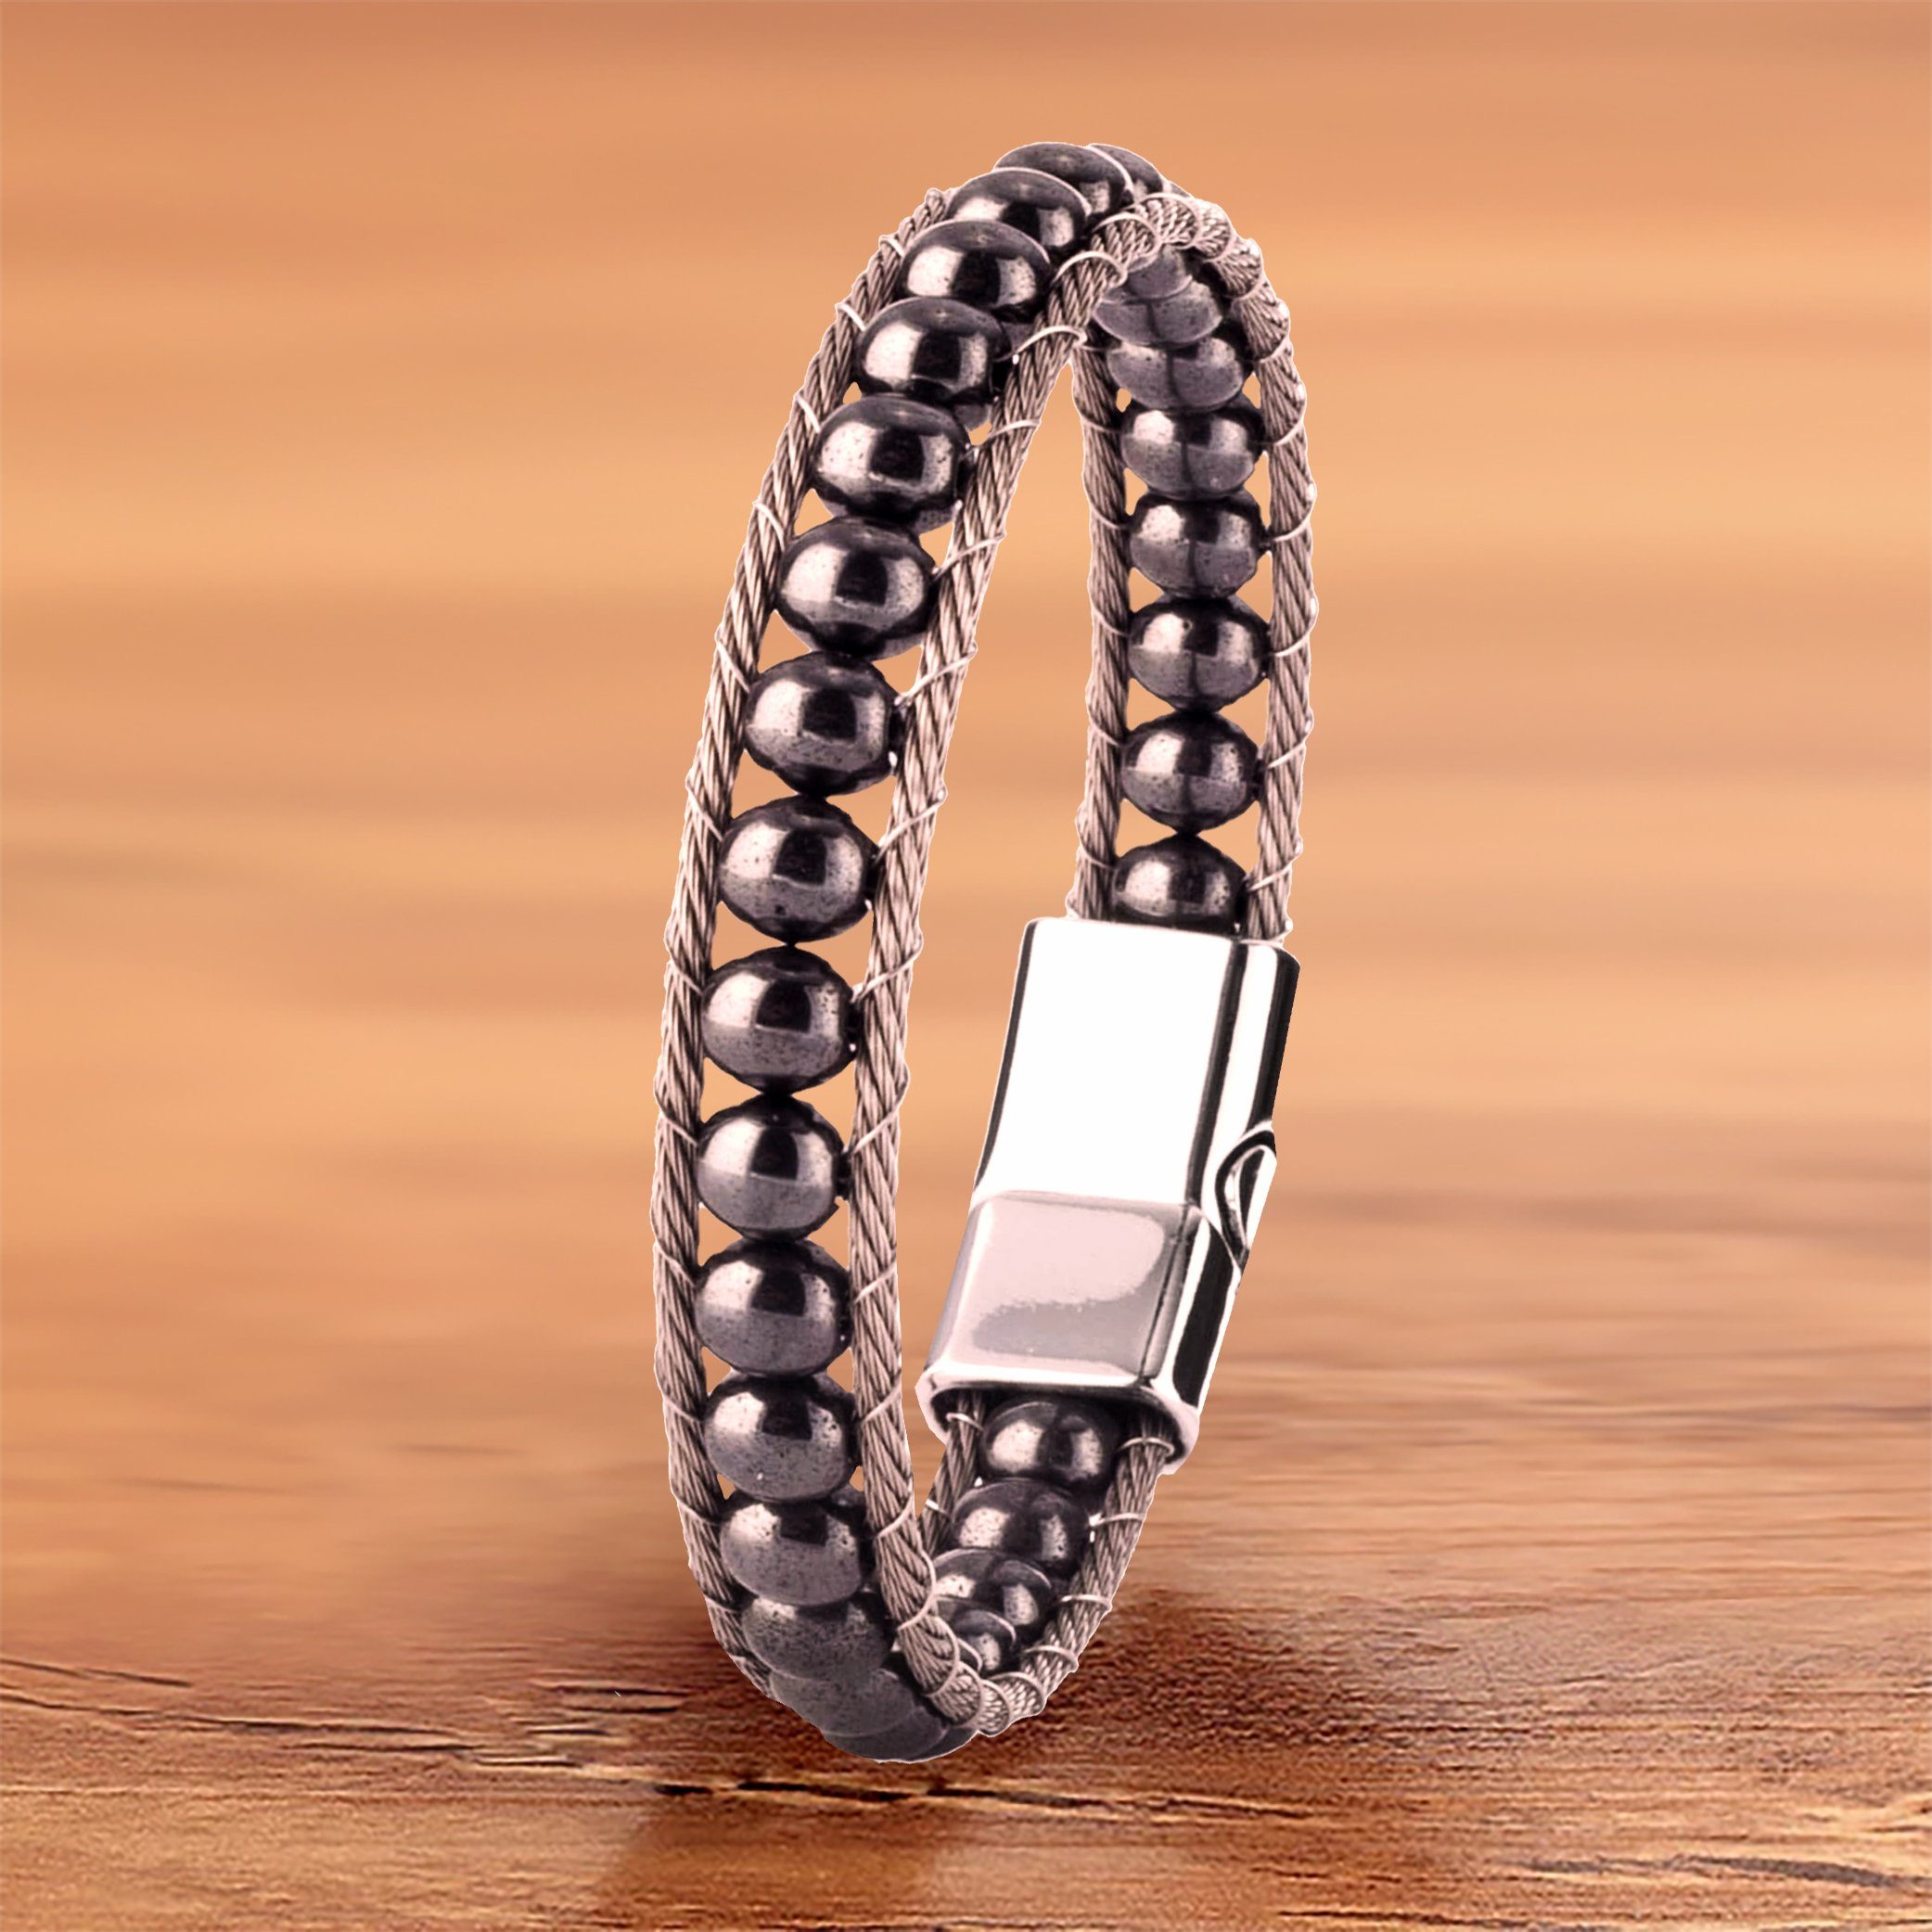 NAHLE Perlenarmband Hämatit Naturstein Armband (inkl. Schmuckschachtel), mit Magnetverschluss für ein sicheres verschließen